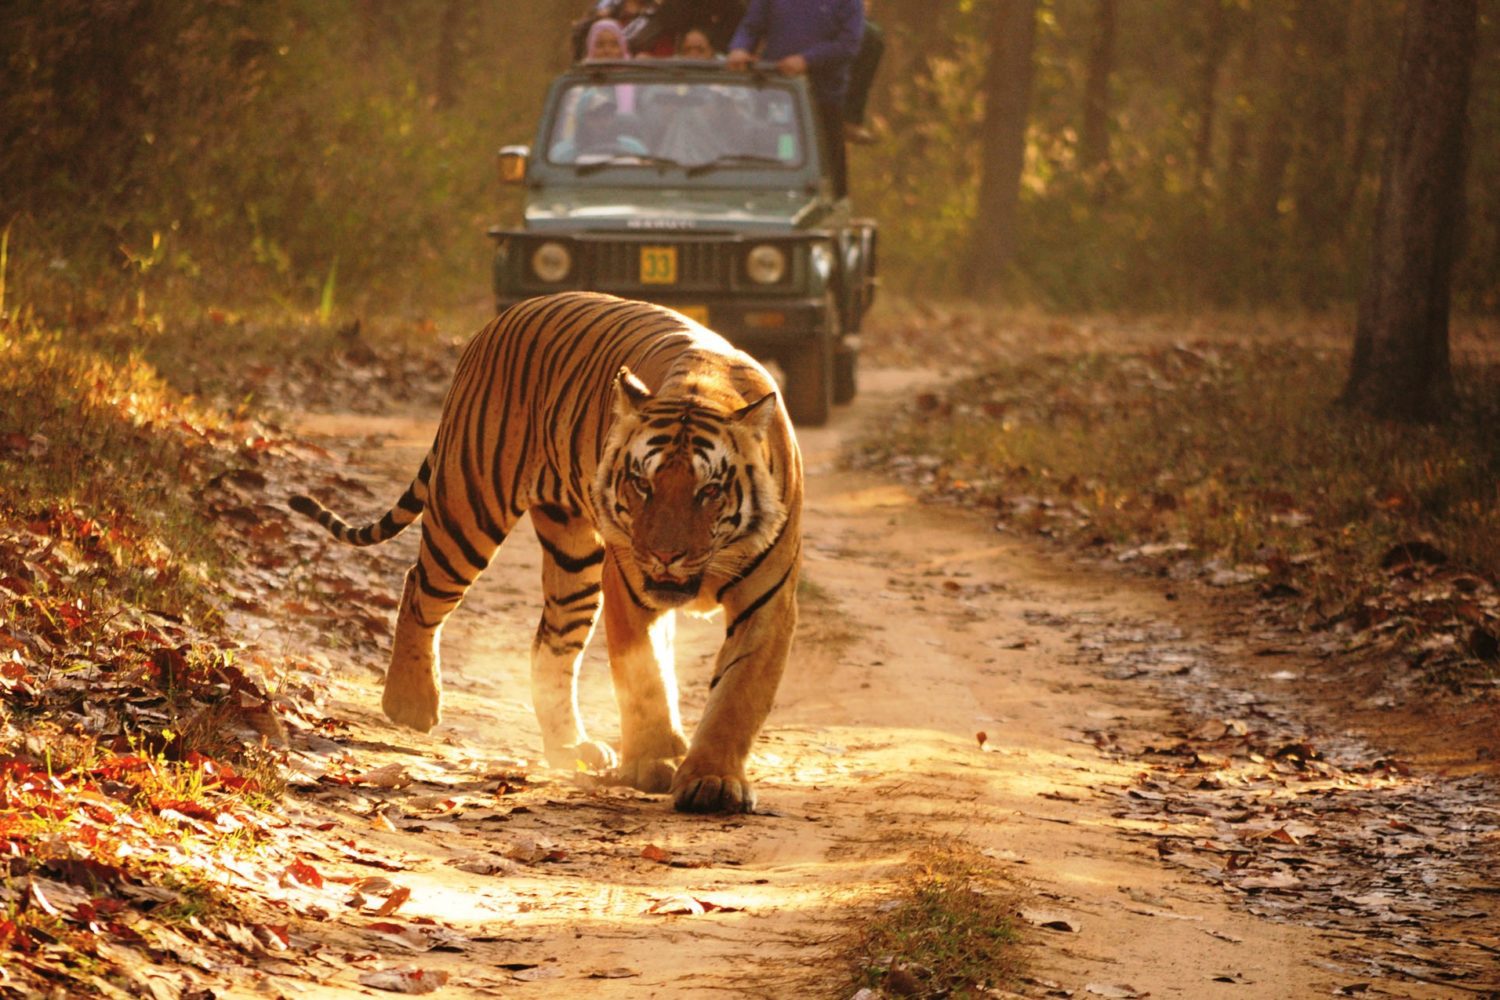 Tiger Safari at Ranthambore National Park